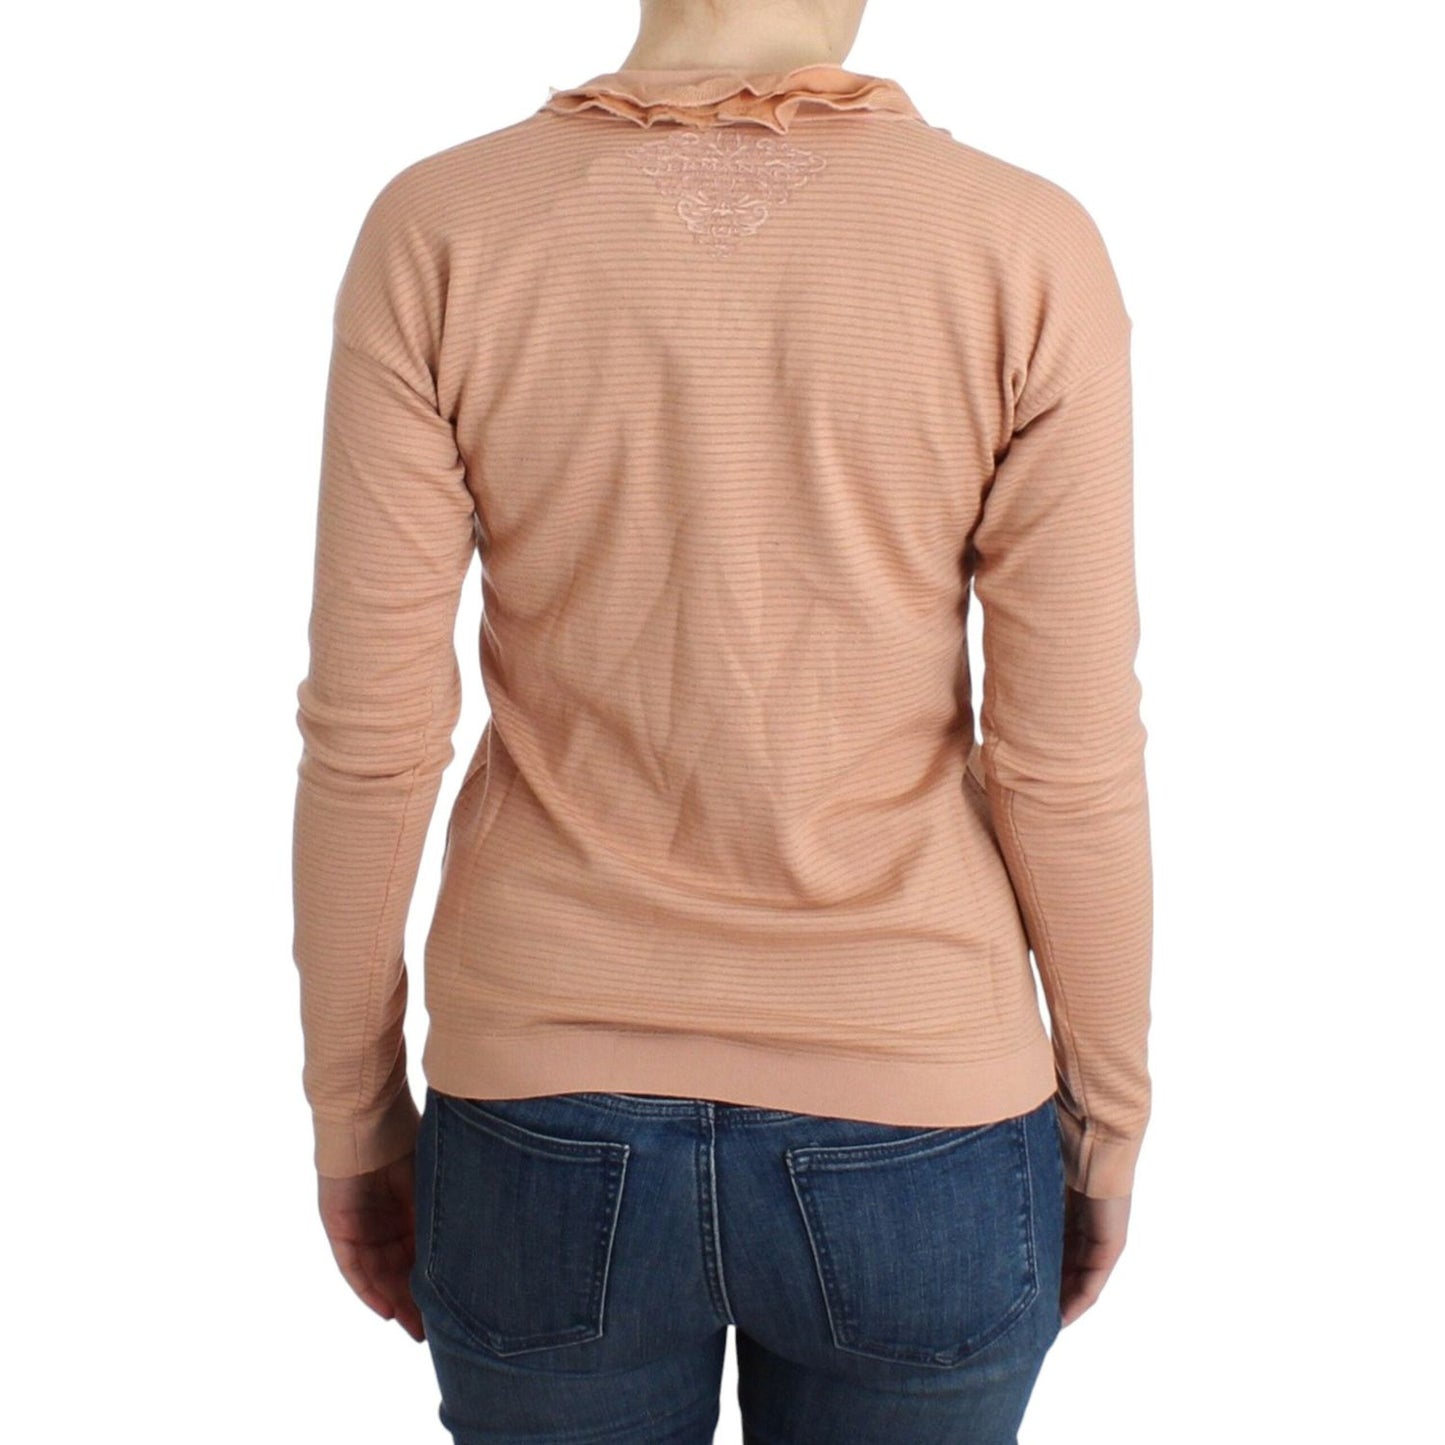 Ermanno ScervinoChic Striped Wool Blend Orange SweaterMcRichard Designer Brands£169.00